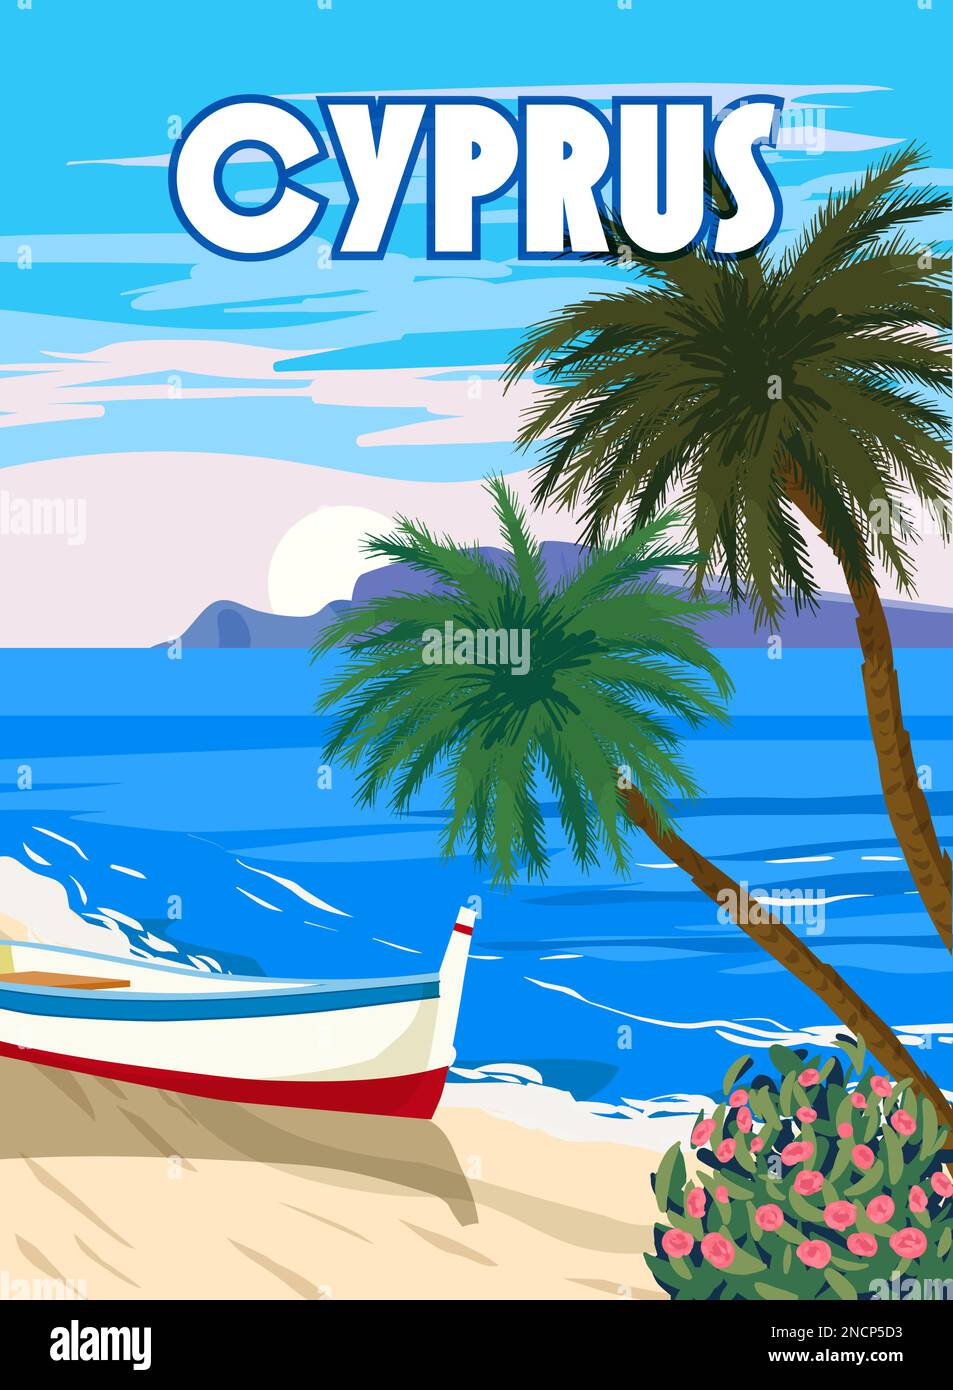 Cipro Poster Travel, mare greco, spiaggia, palme, barca, Poster, paesaggio mediterraneo. Stile vintage Illustrazione Vettoriale